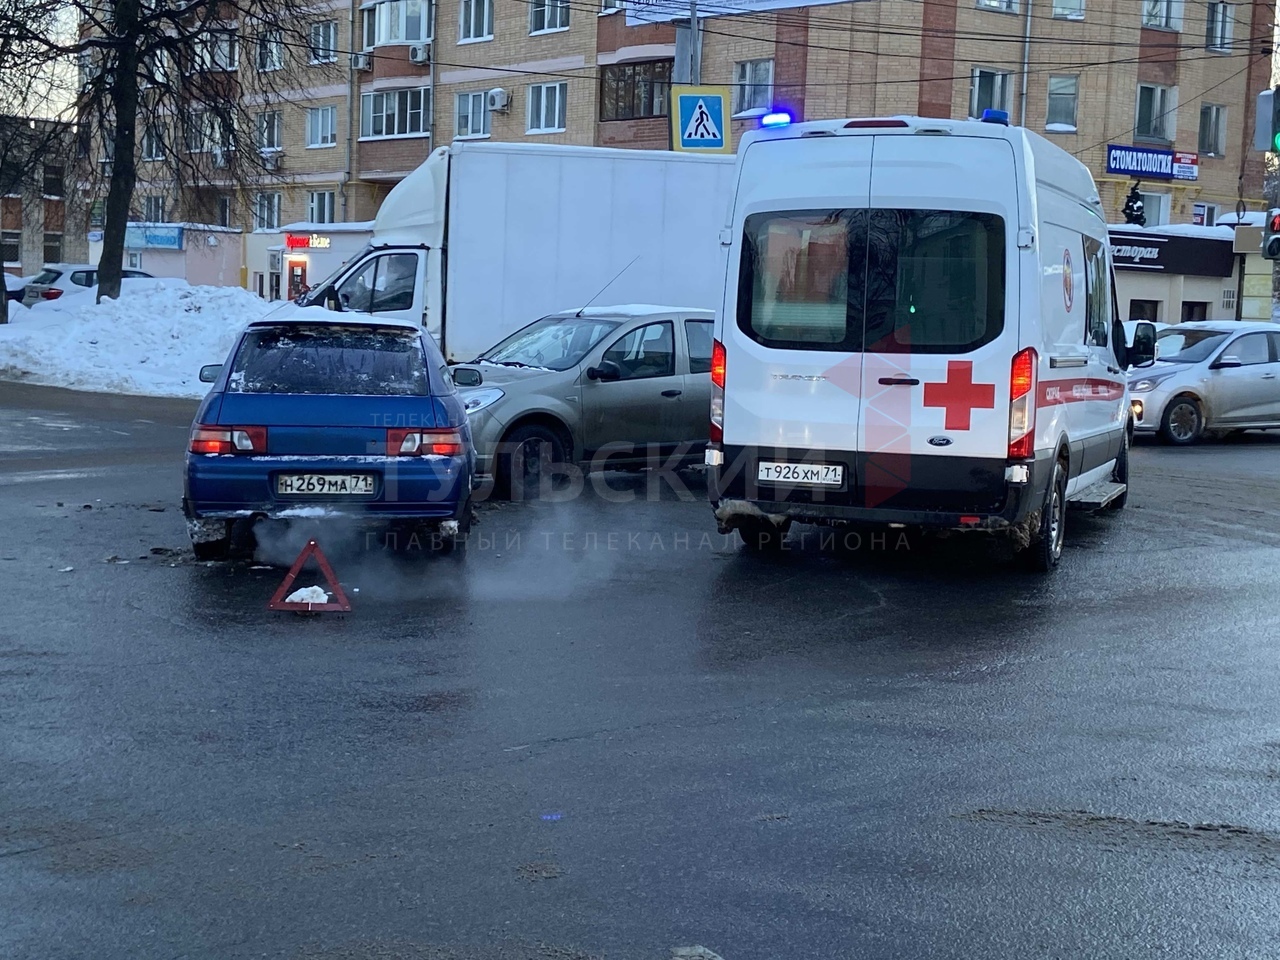 В Туле автомобиль скорой помощи попал в ДТП